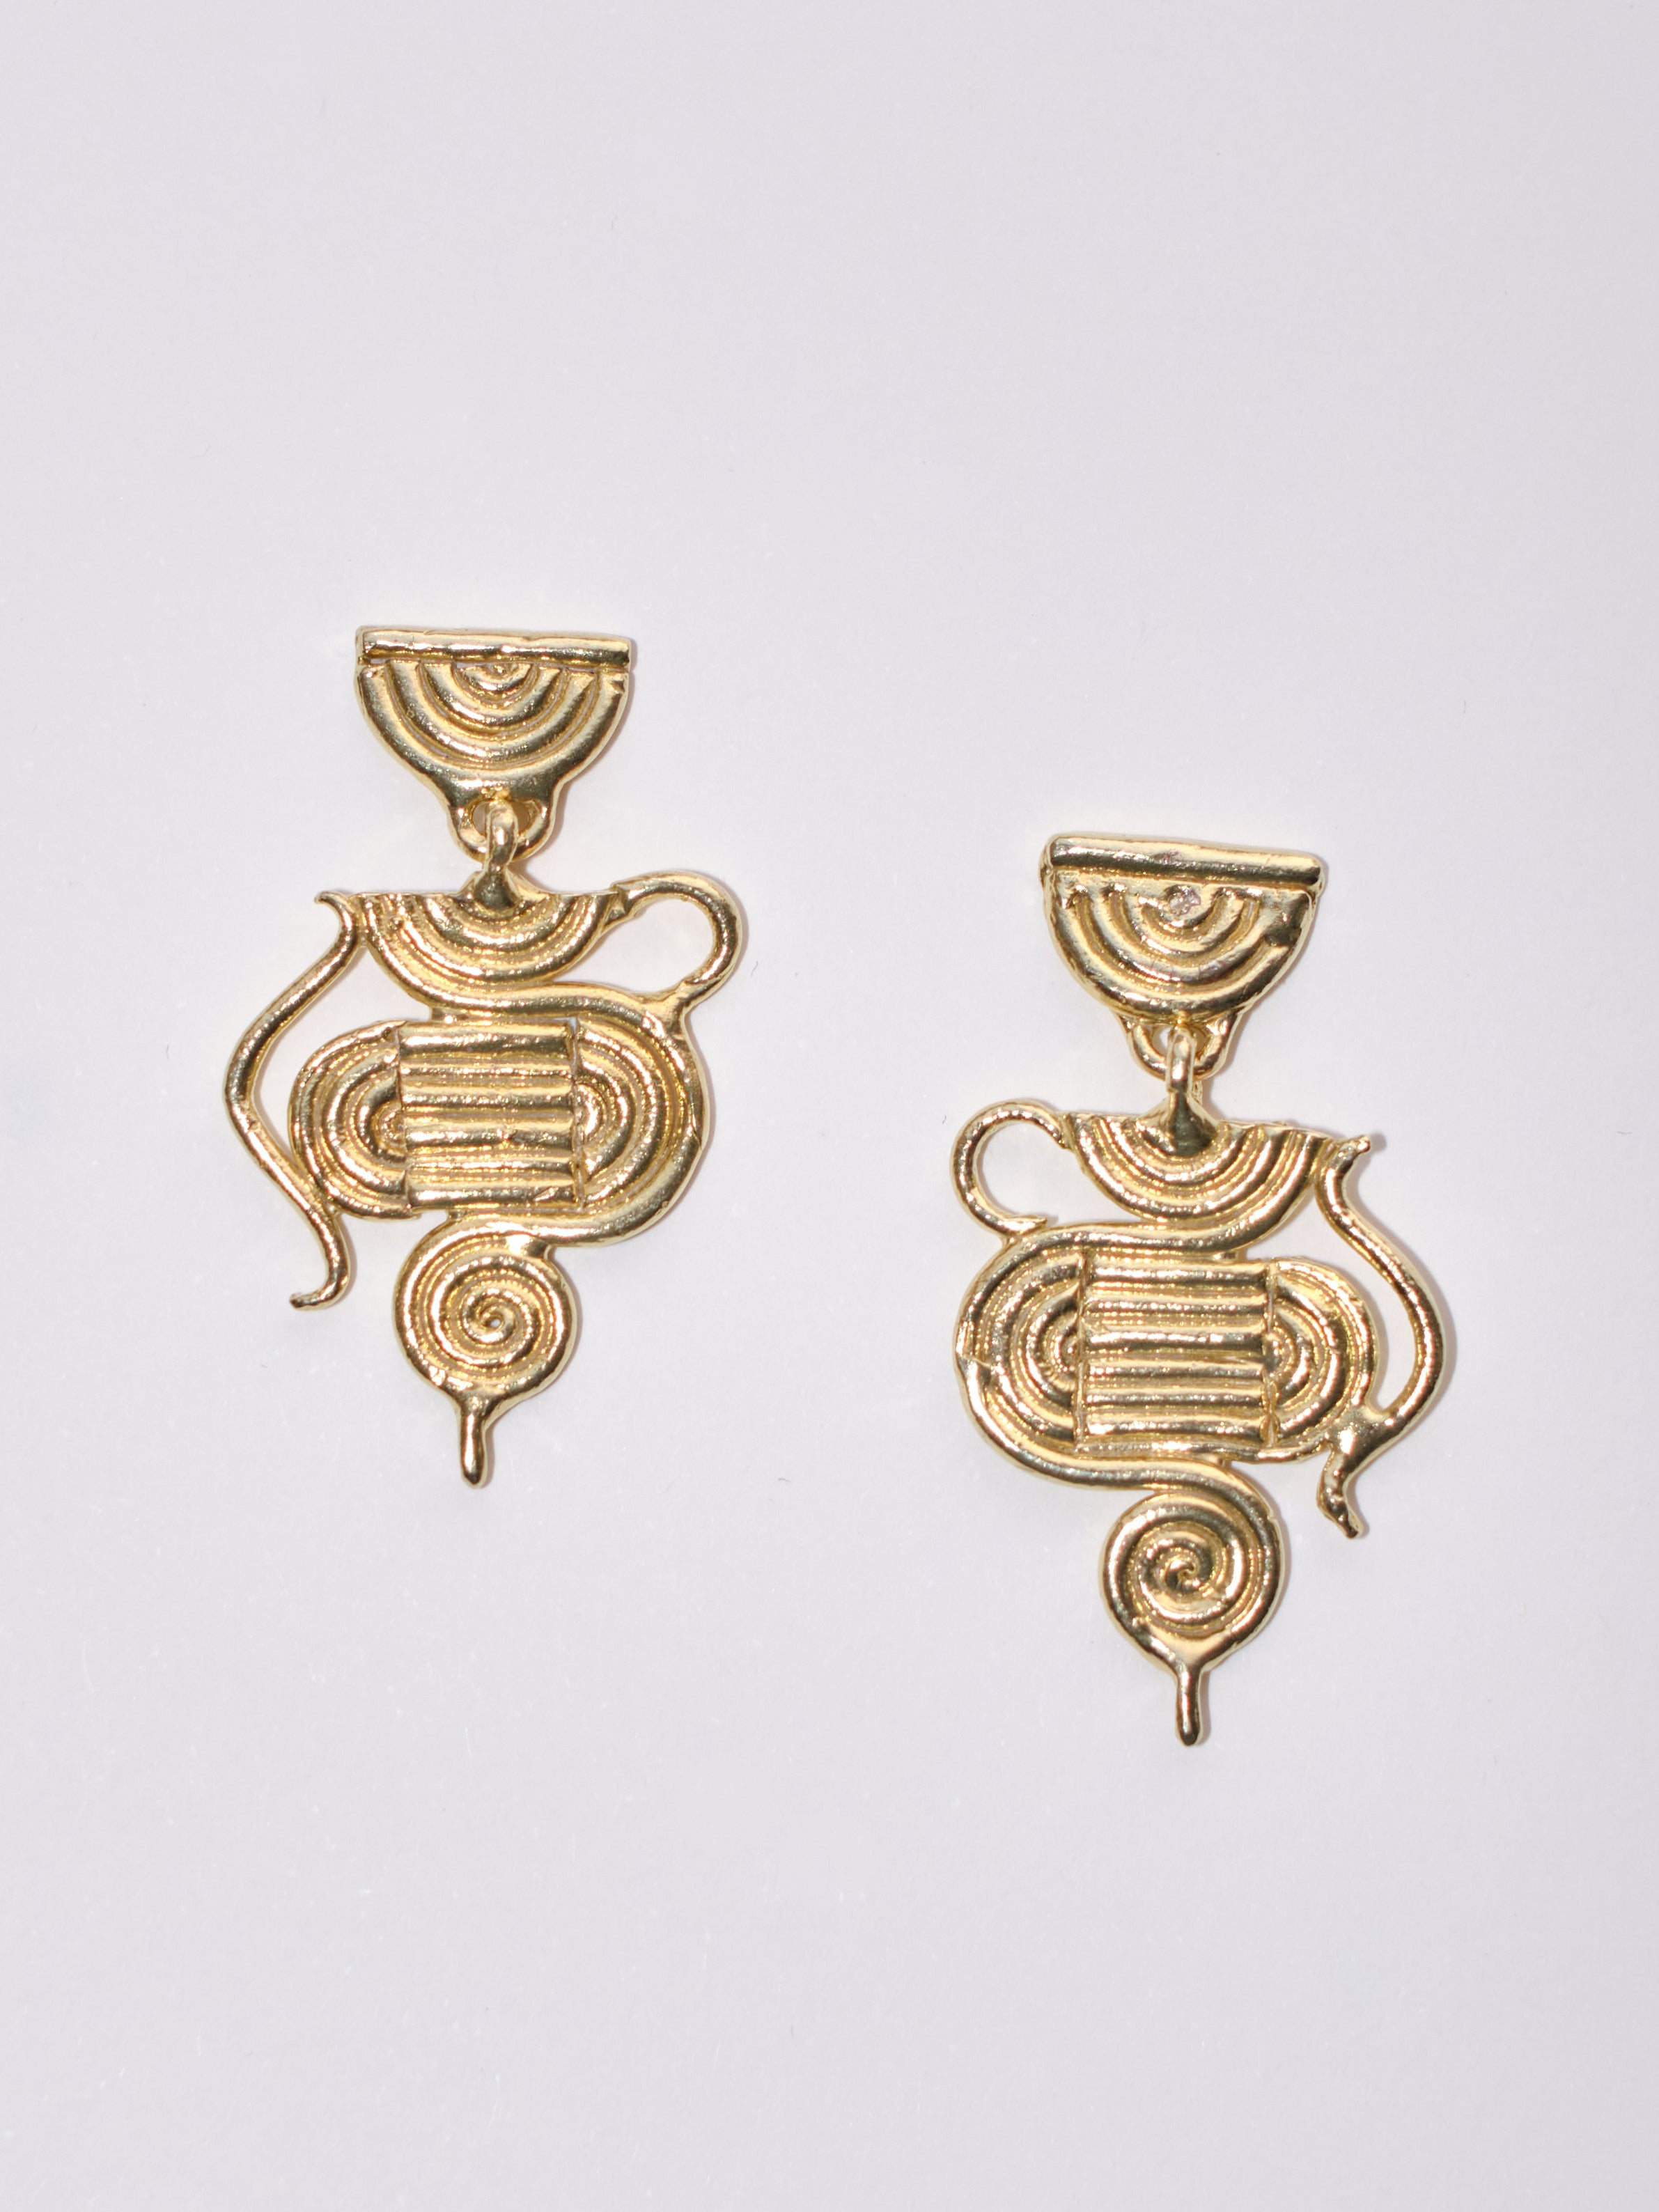 The Nefertiti Earrings